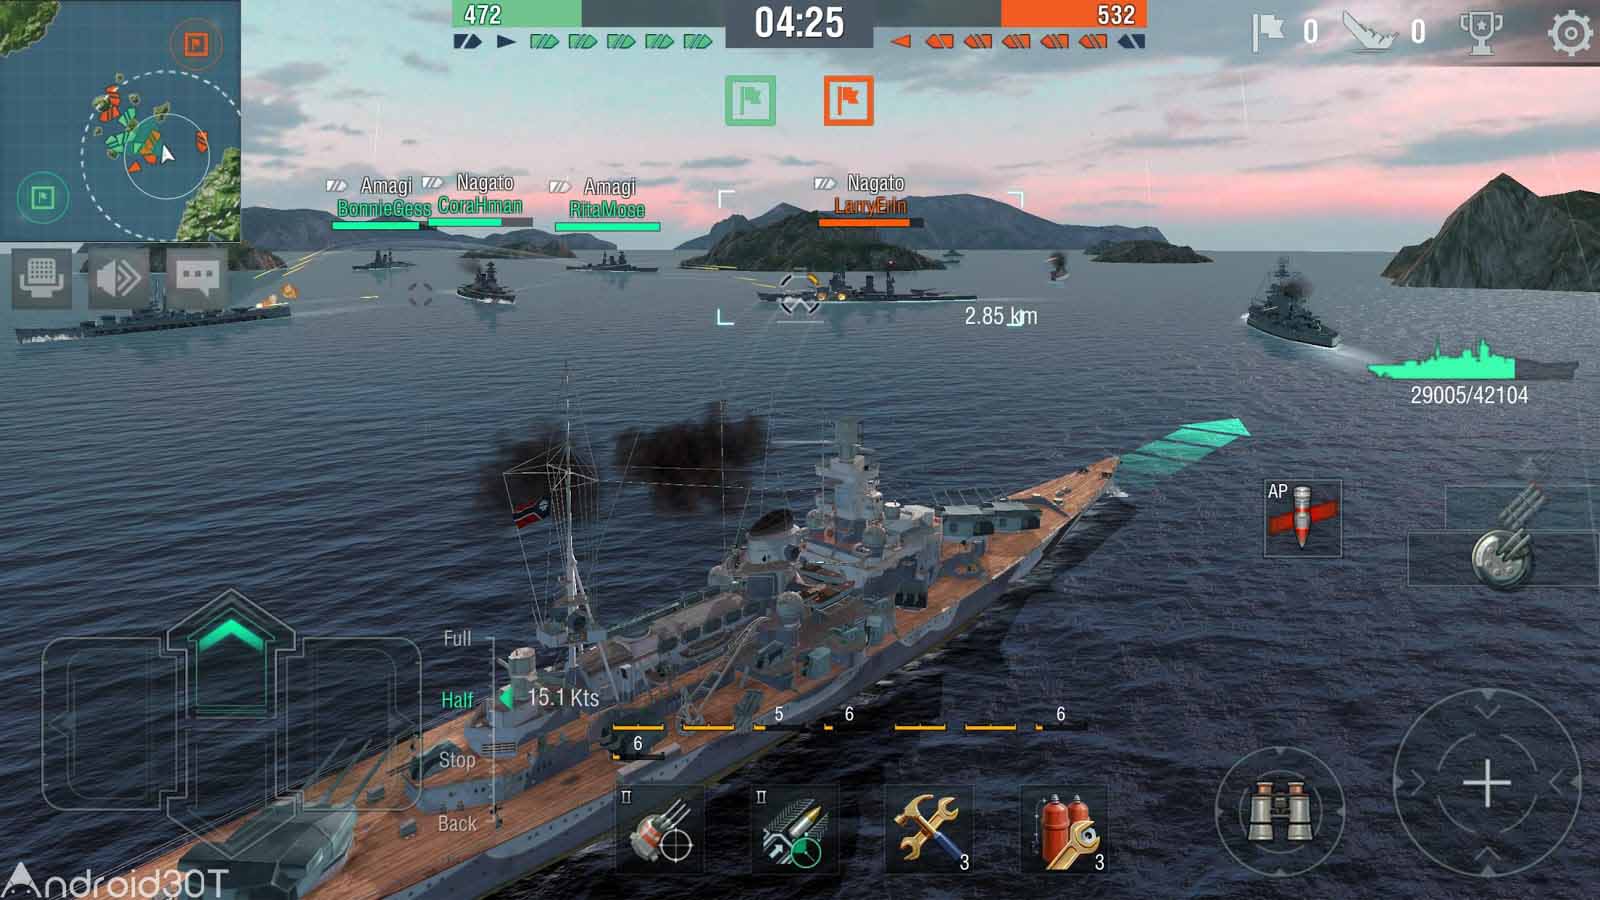 دانلود World of Warships Blitz 5.3.0 – بازی فوق العاده نبرد کشتی ها اندروید